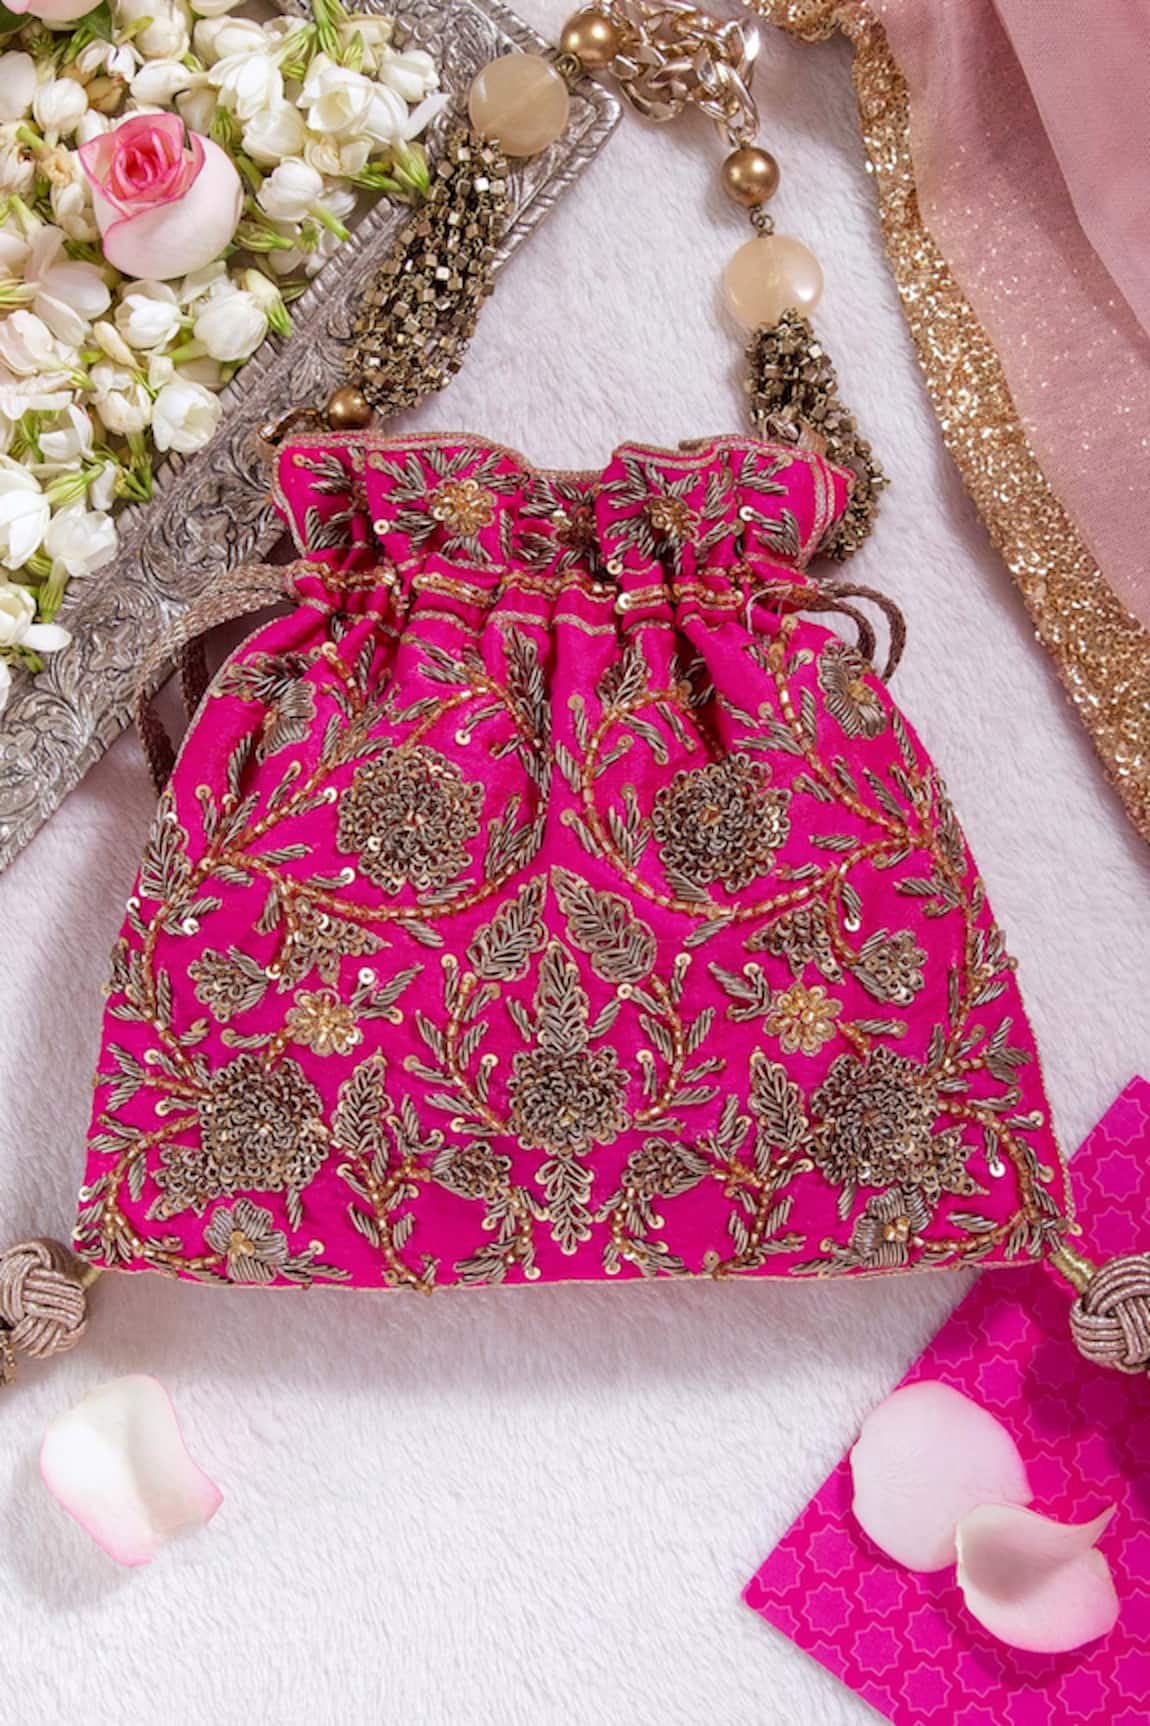 The Pink Potli Gulabo Floral Embroidered Potli Bag